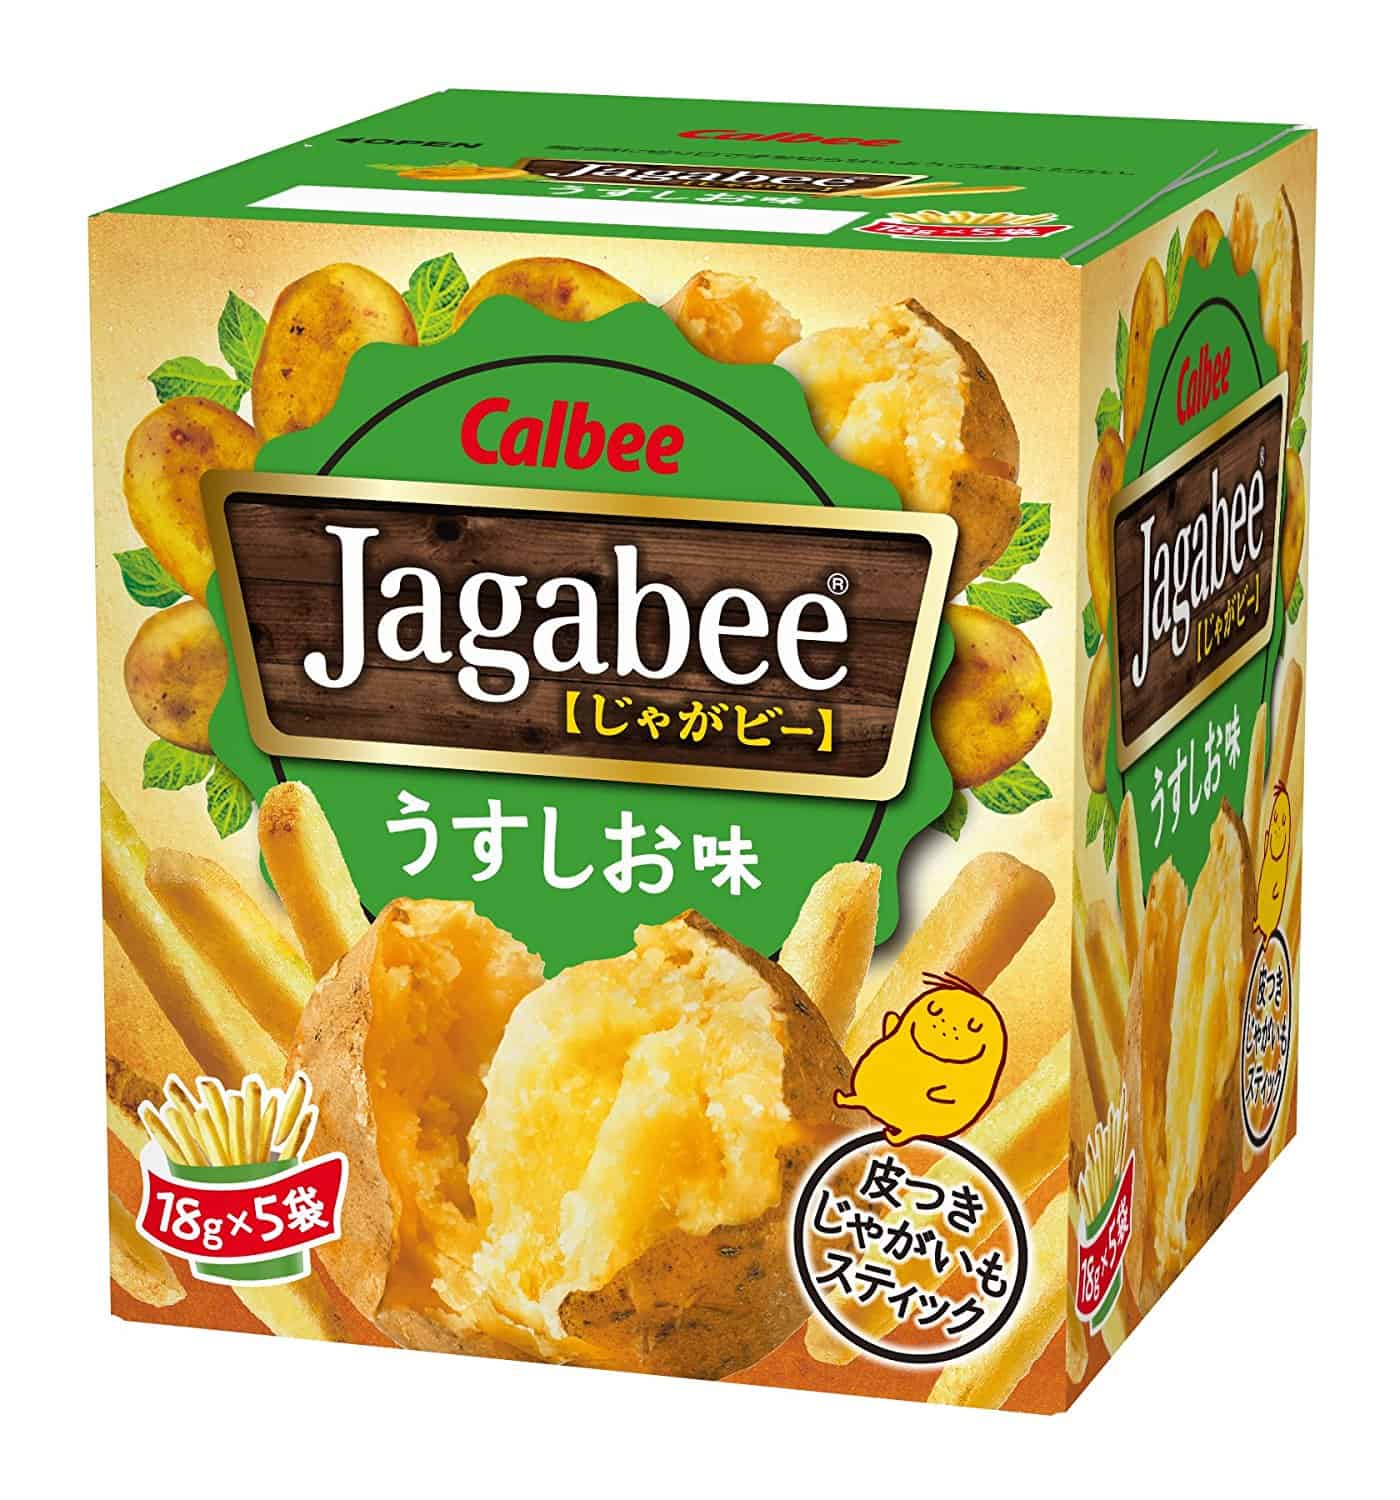 Petisco de batata Jagabee do Japão